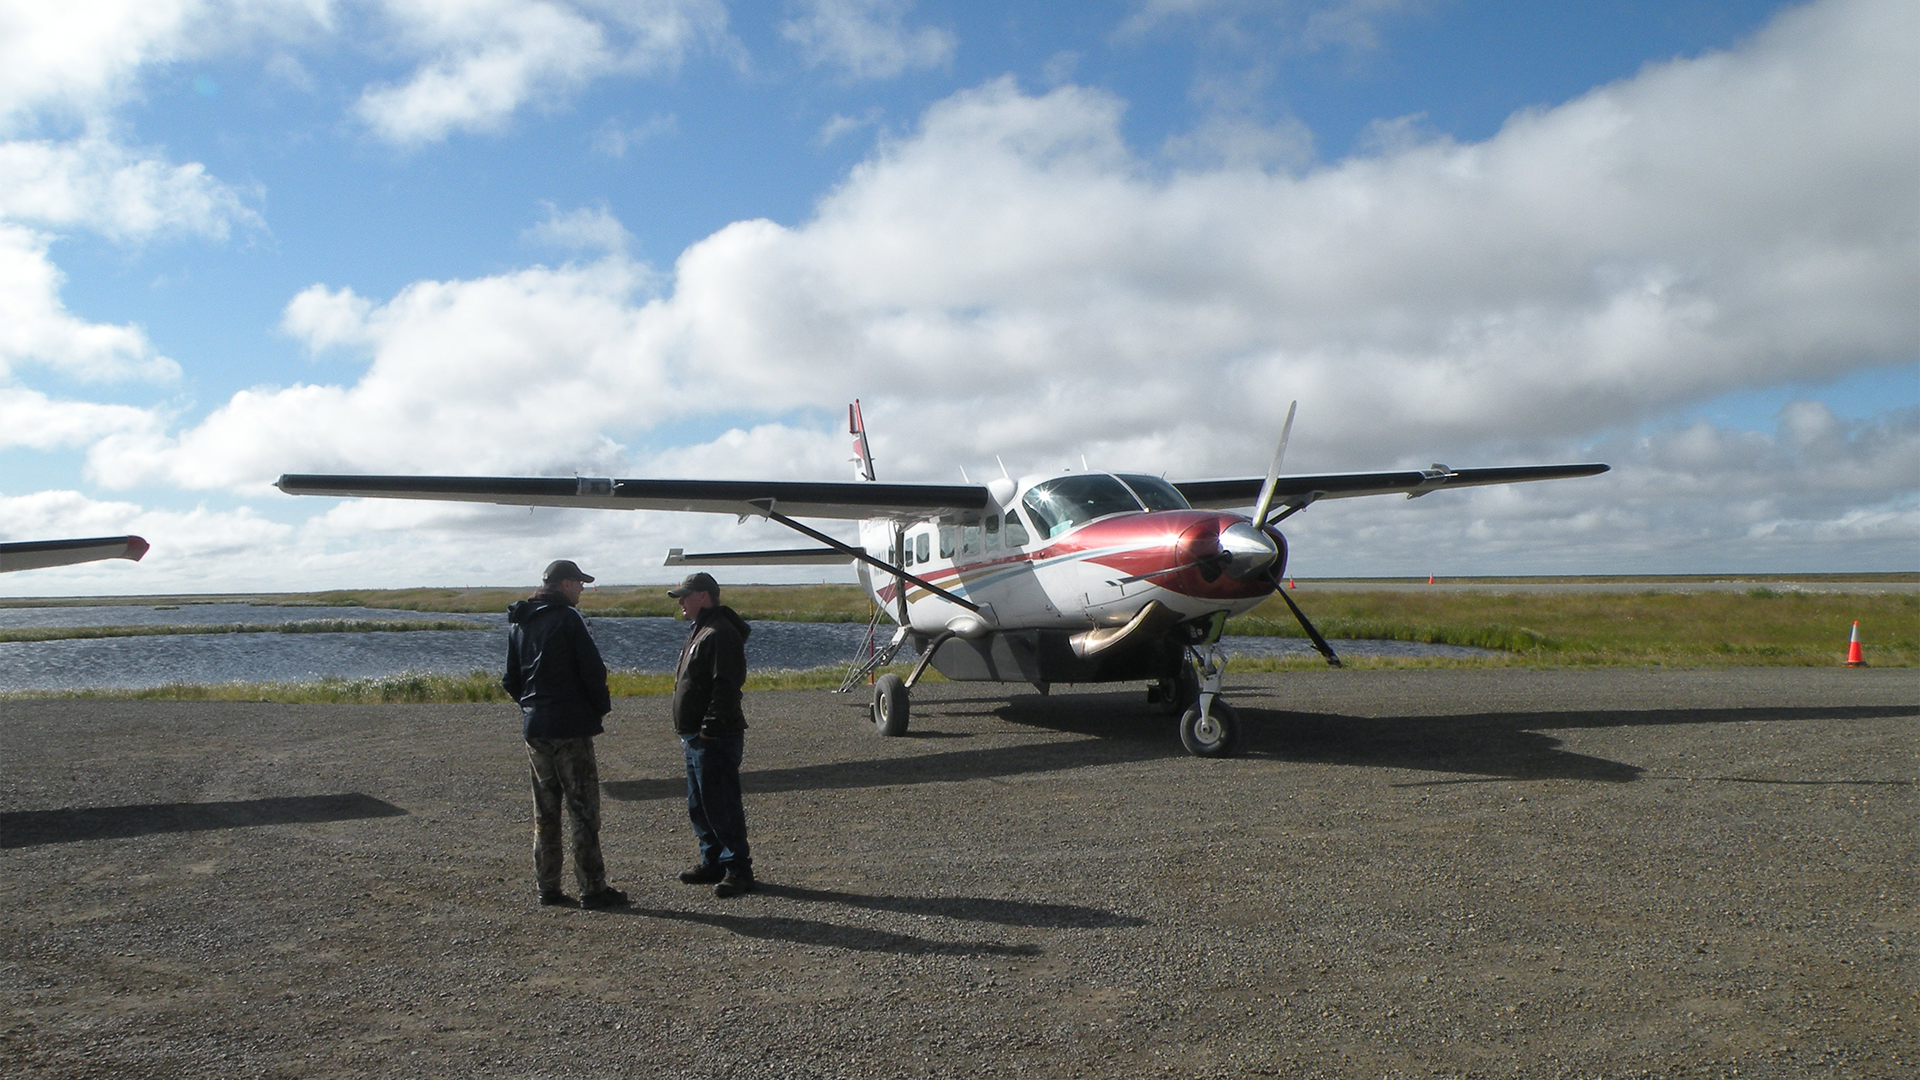 Kwigillingok Airstrip in Alaska